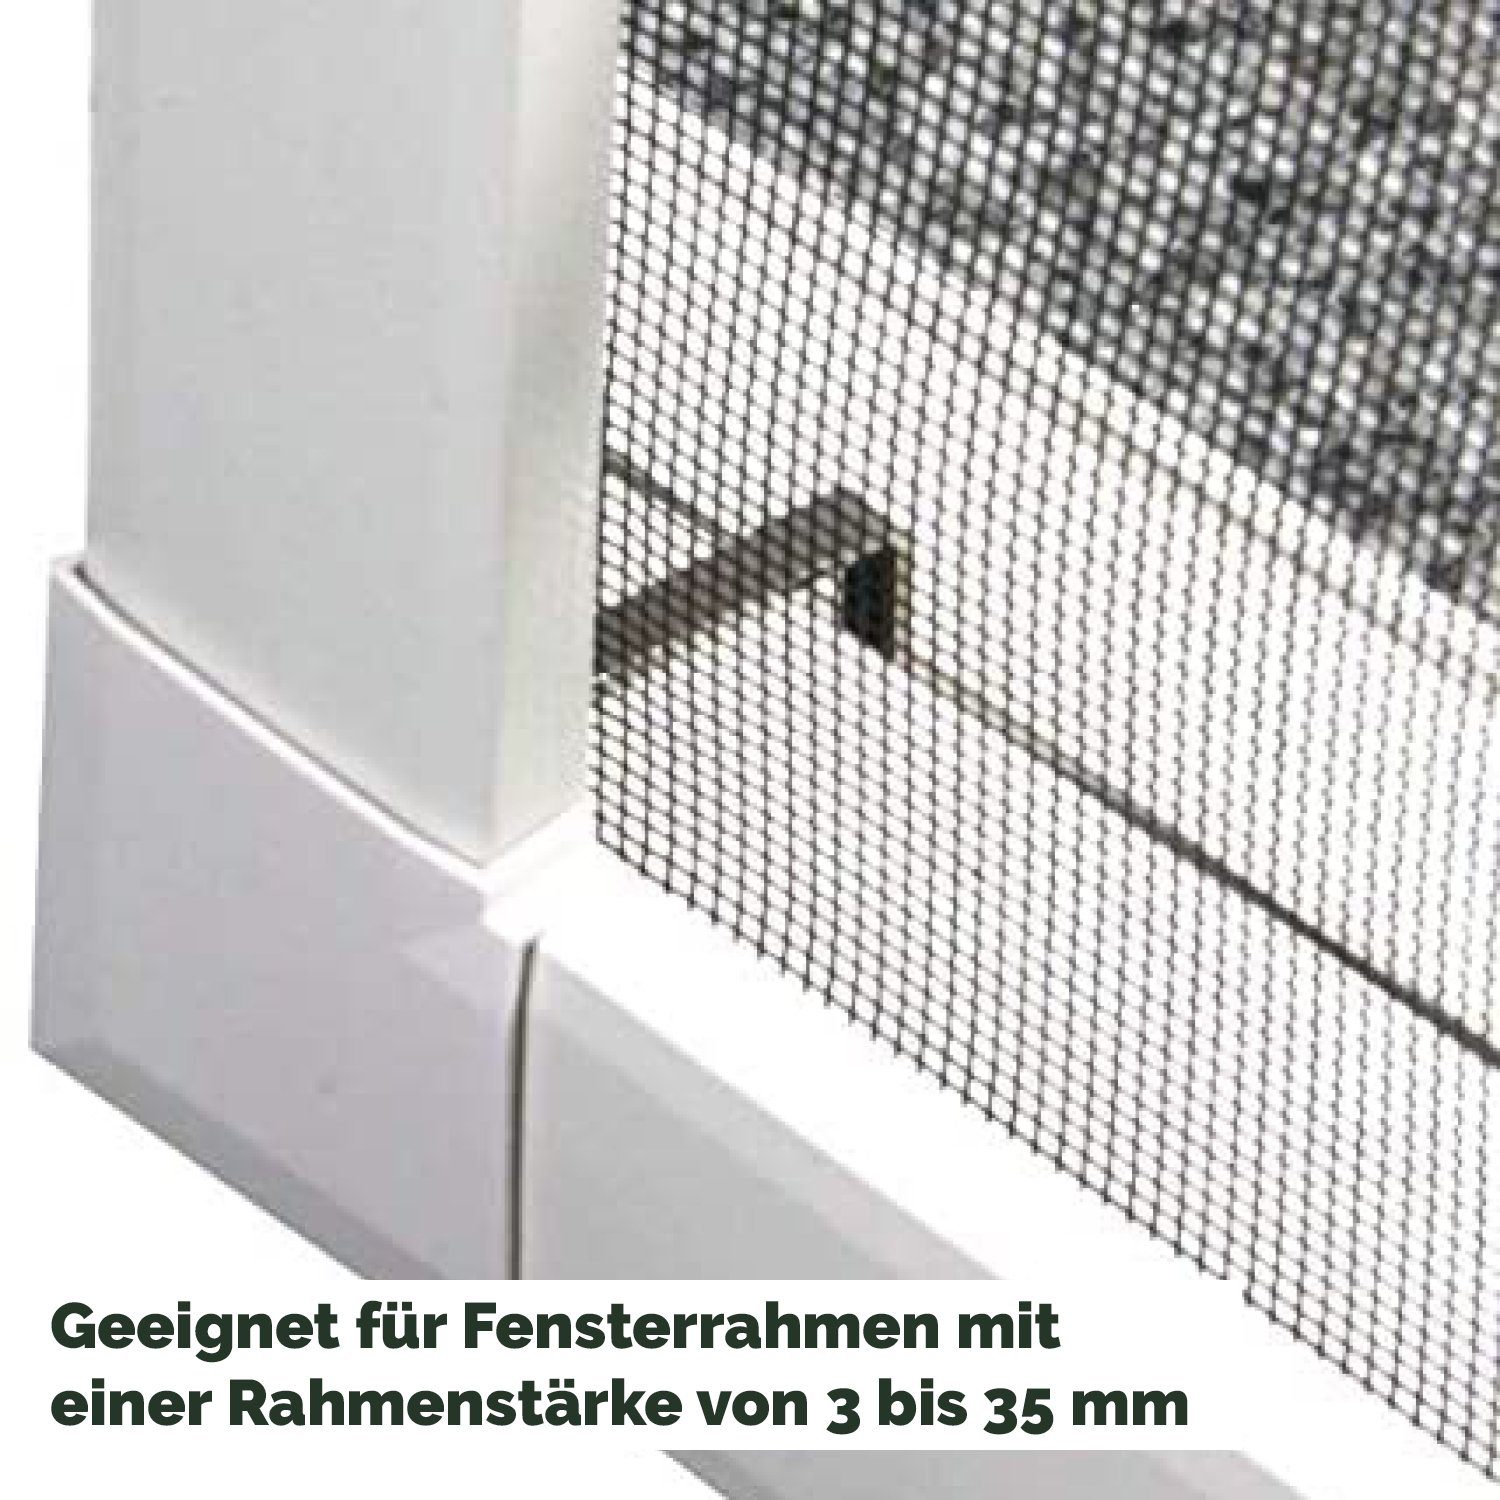 Insektenschutz Fenster Spannrahmen Nematek Insektenschutz-Fensterrahmen Alu Nematek® System premium für Weiß